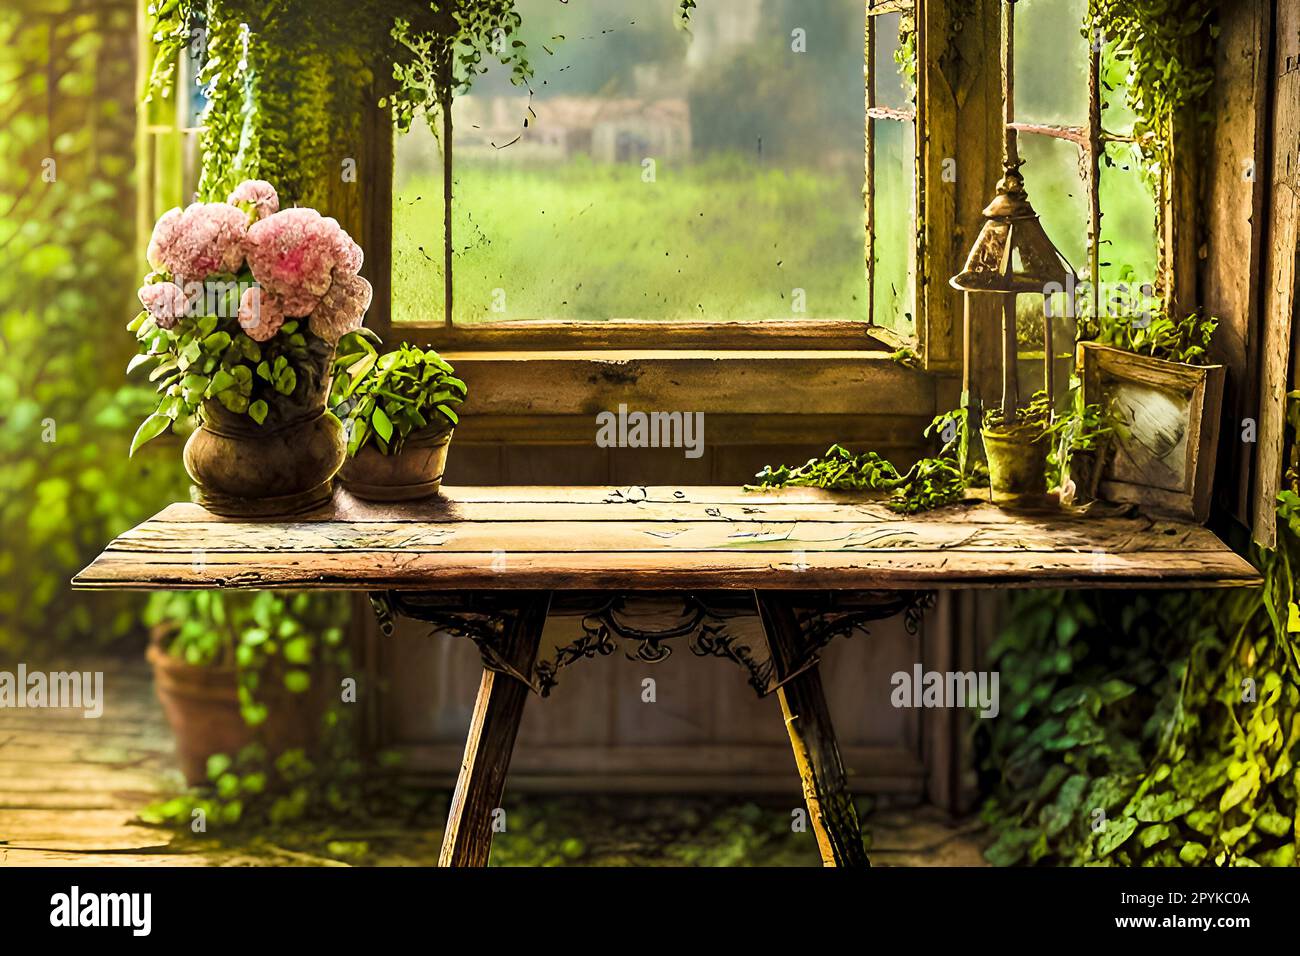 Klassischer Holztisch mit Blumen in Töpfen. Foto im alten Farbbildstil Stockfoto